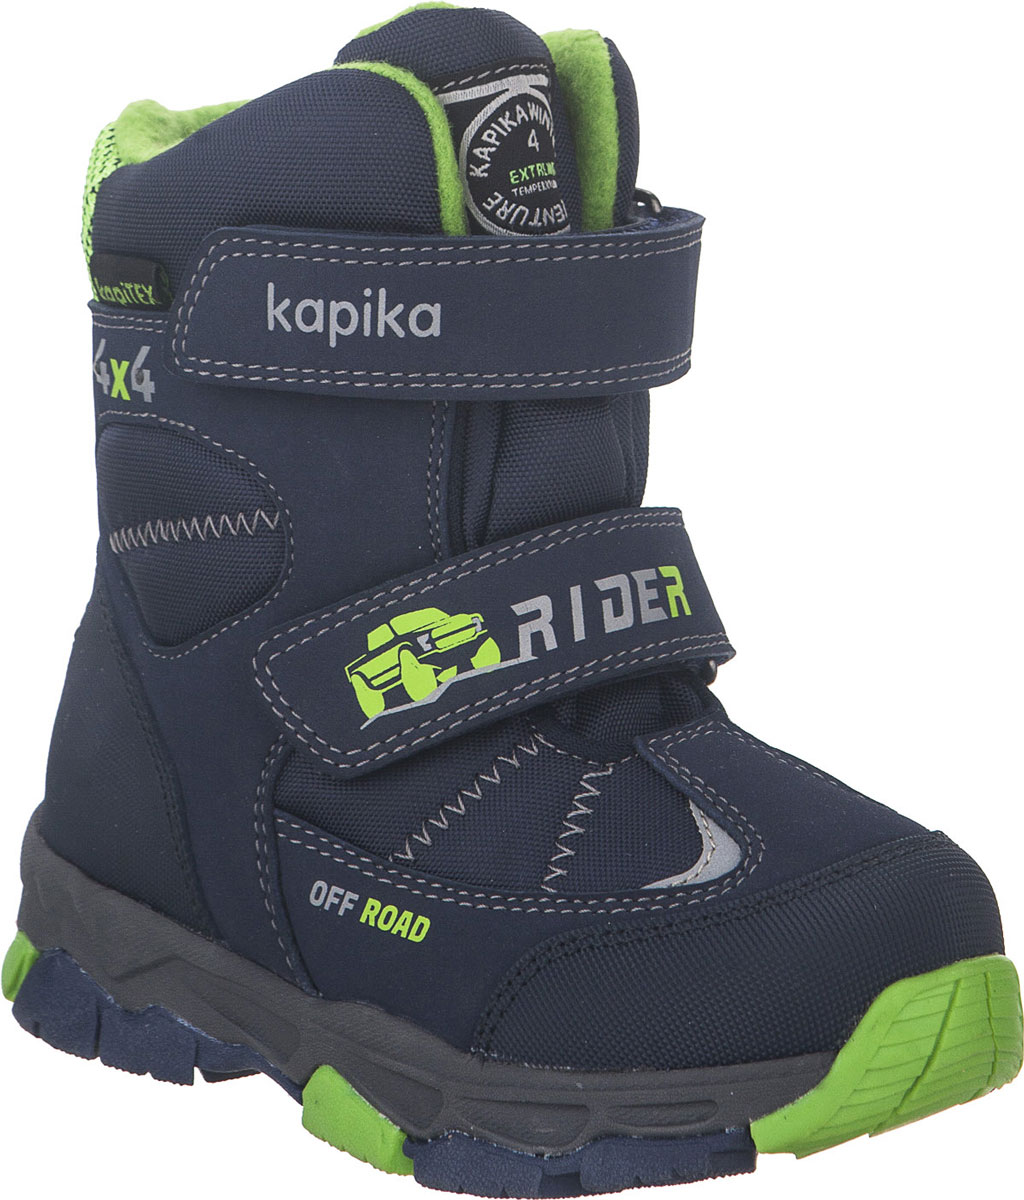 Ботинки для мальчика Kapika, цвет: темно-синий, салатовый. 42215-2. Размер 32